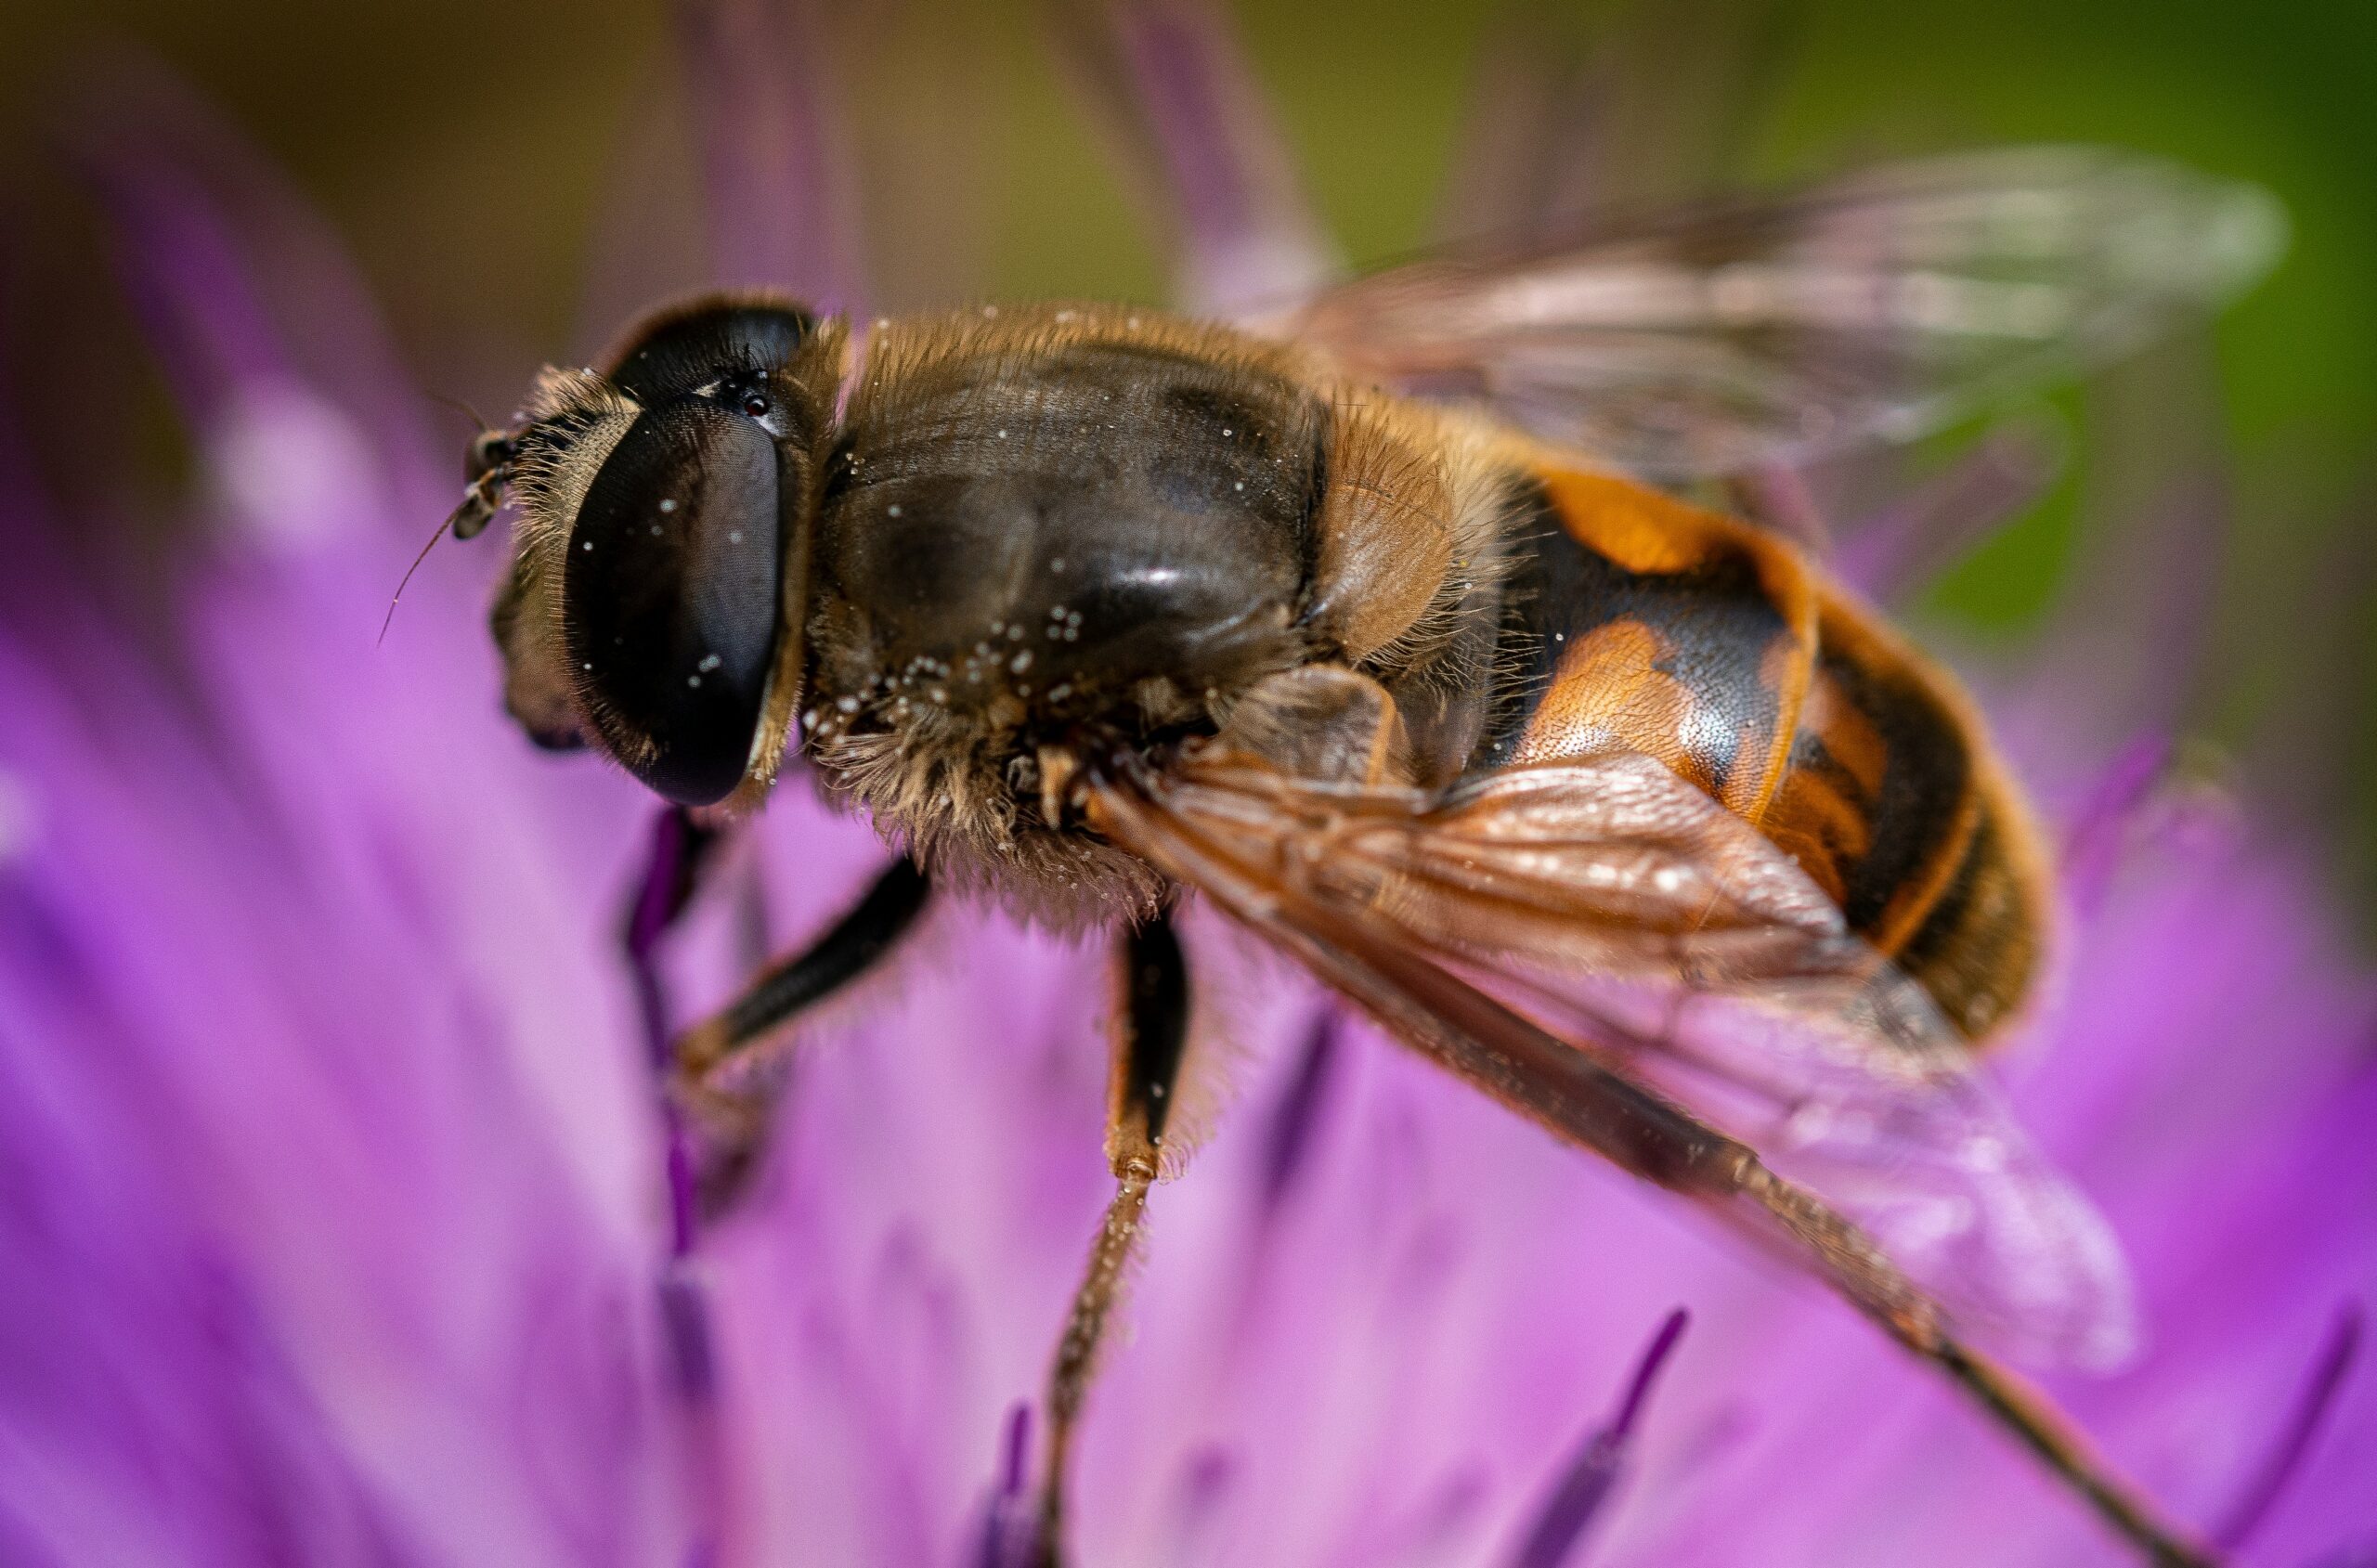 Cette image magnifique capture une abeille en train de butiner une fleur, symbolisant la douceur et la spiritualité. Elle incarne la signification profonde de voir une abeille.